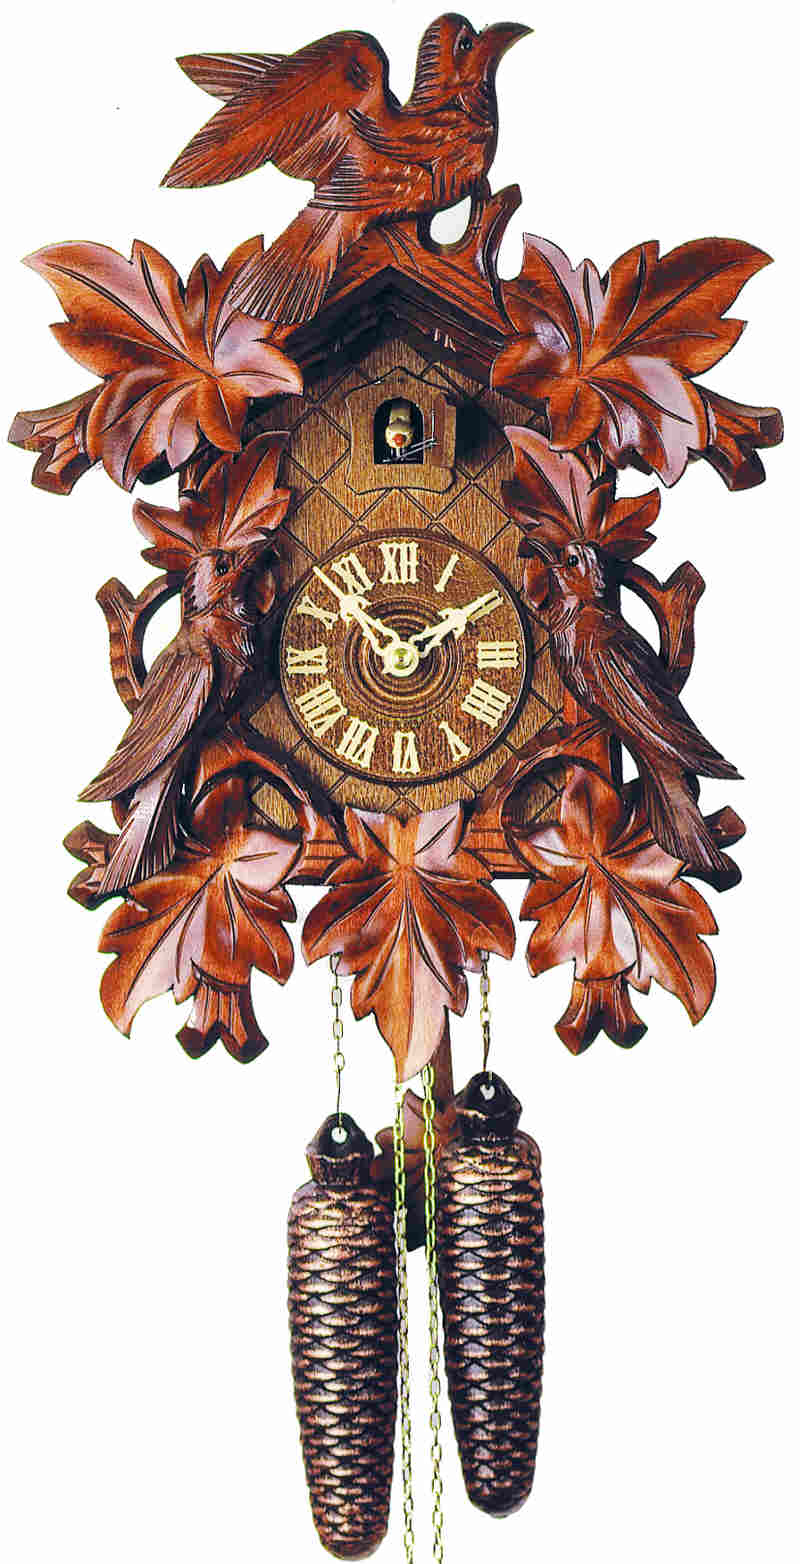 Cuckoo Clock